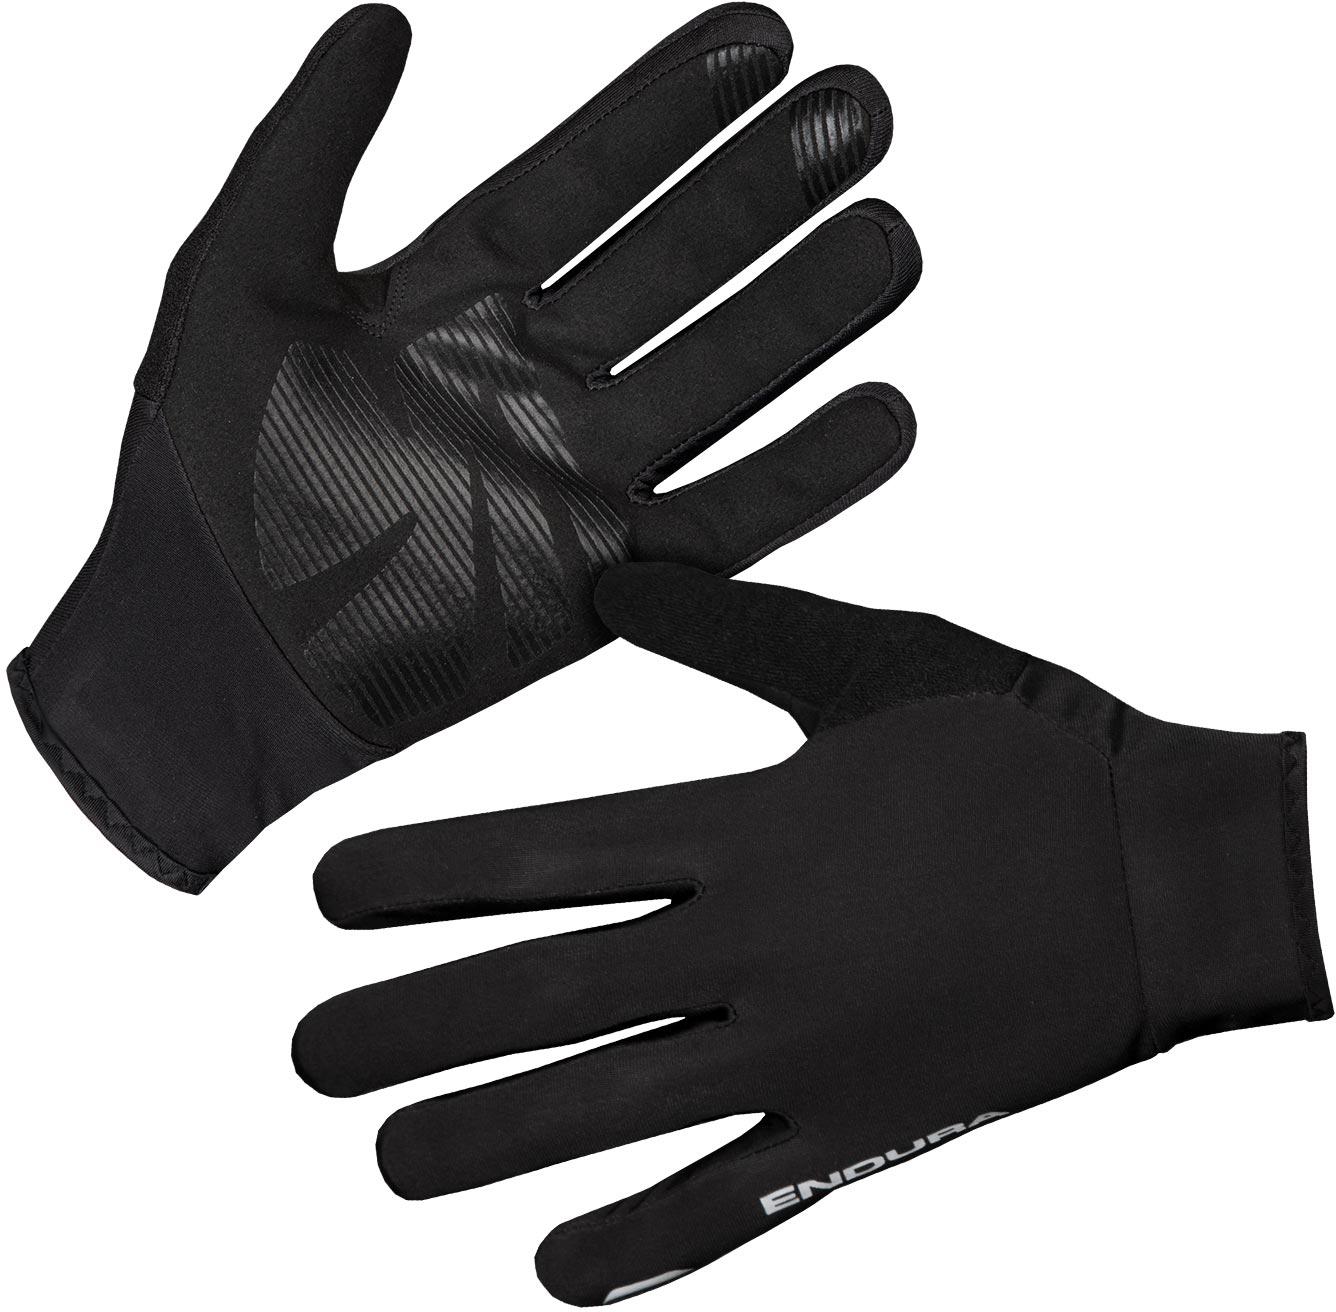 Endura Fs260-pro Thermo Glove - Black/reflective